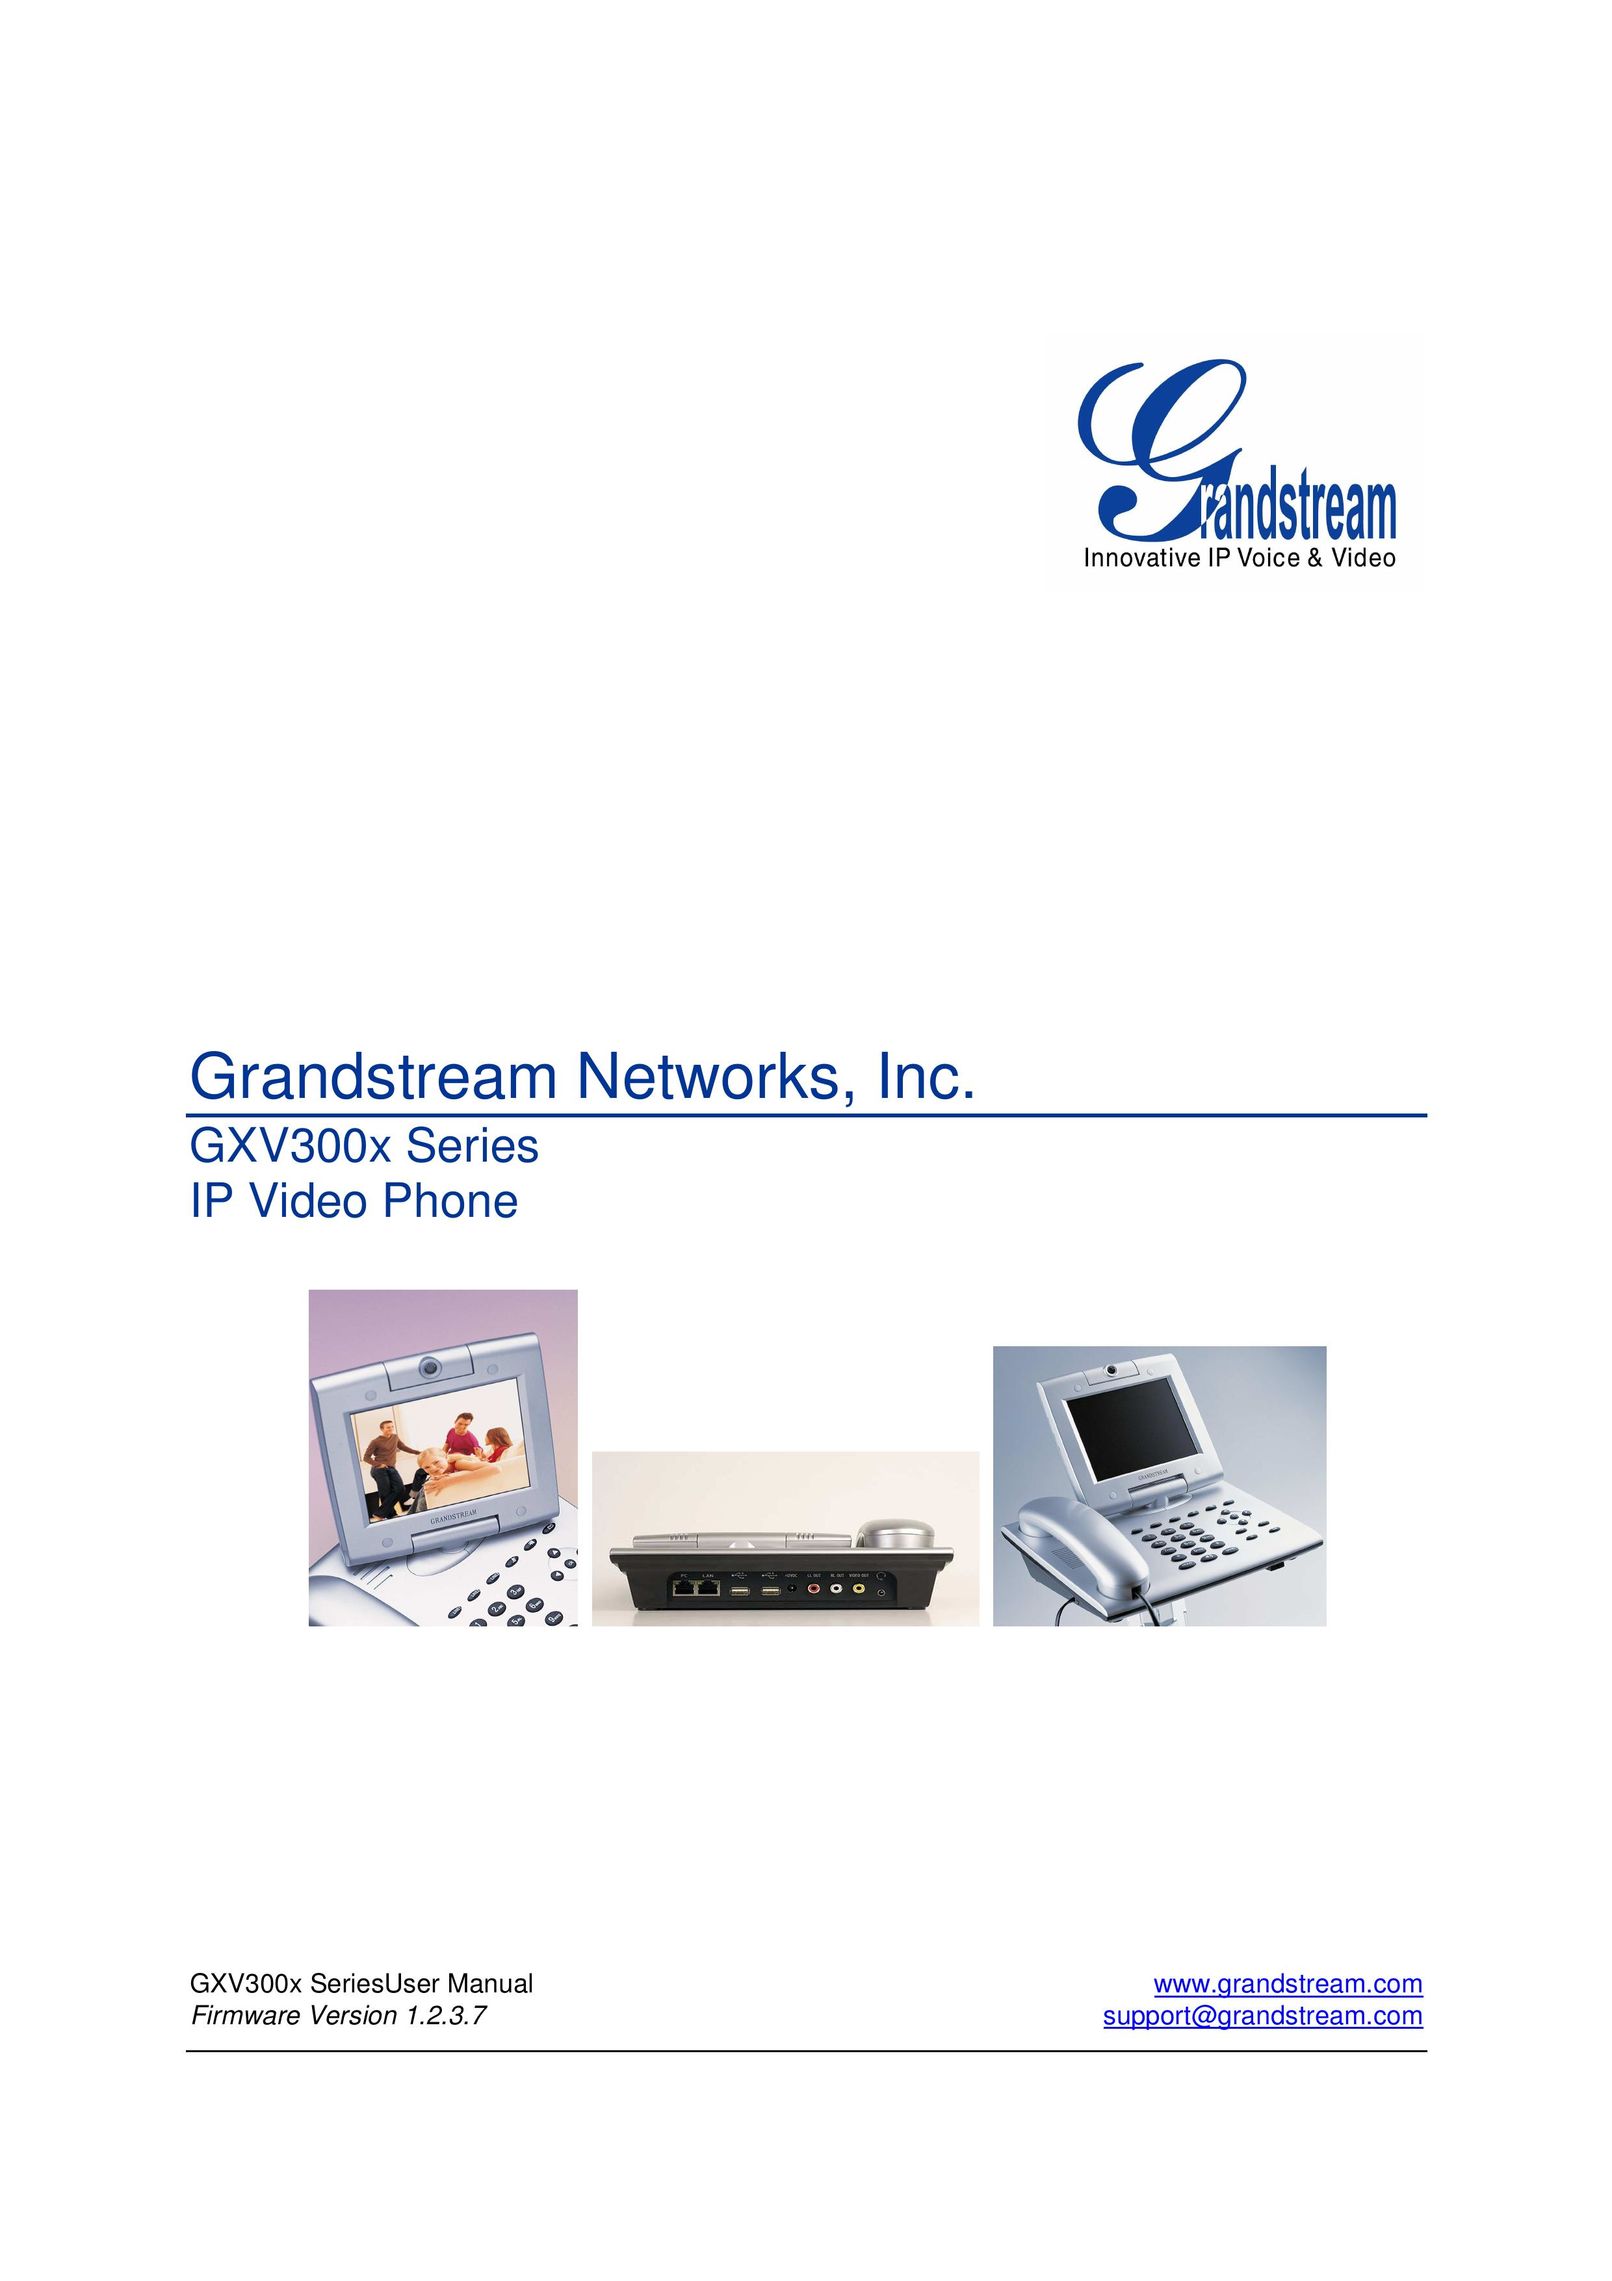 Grandstream Networks GXV300X Dishwasher User Manual